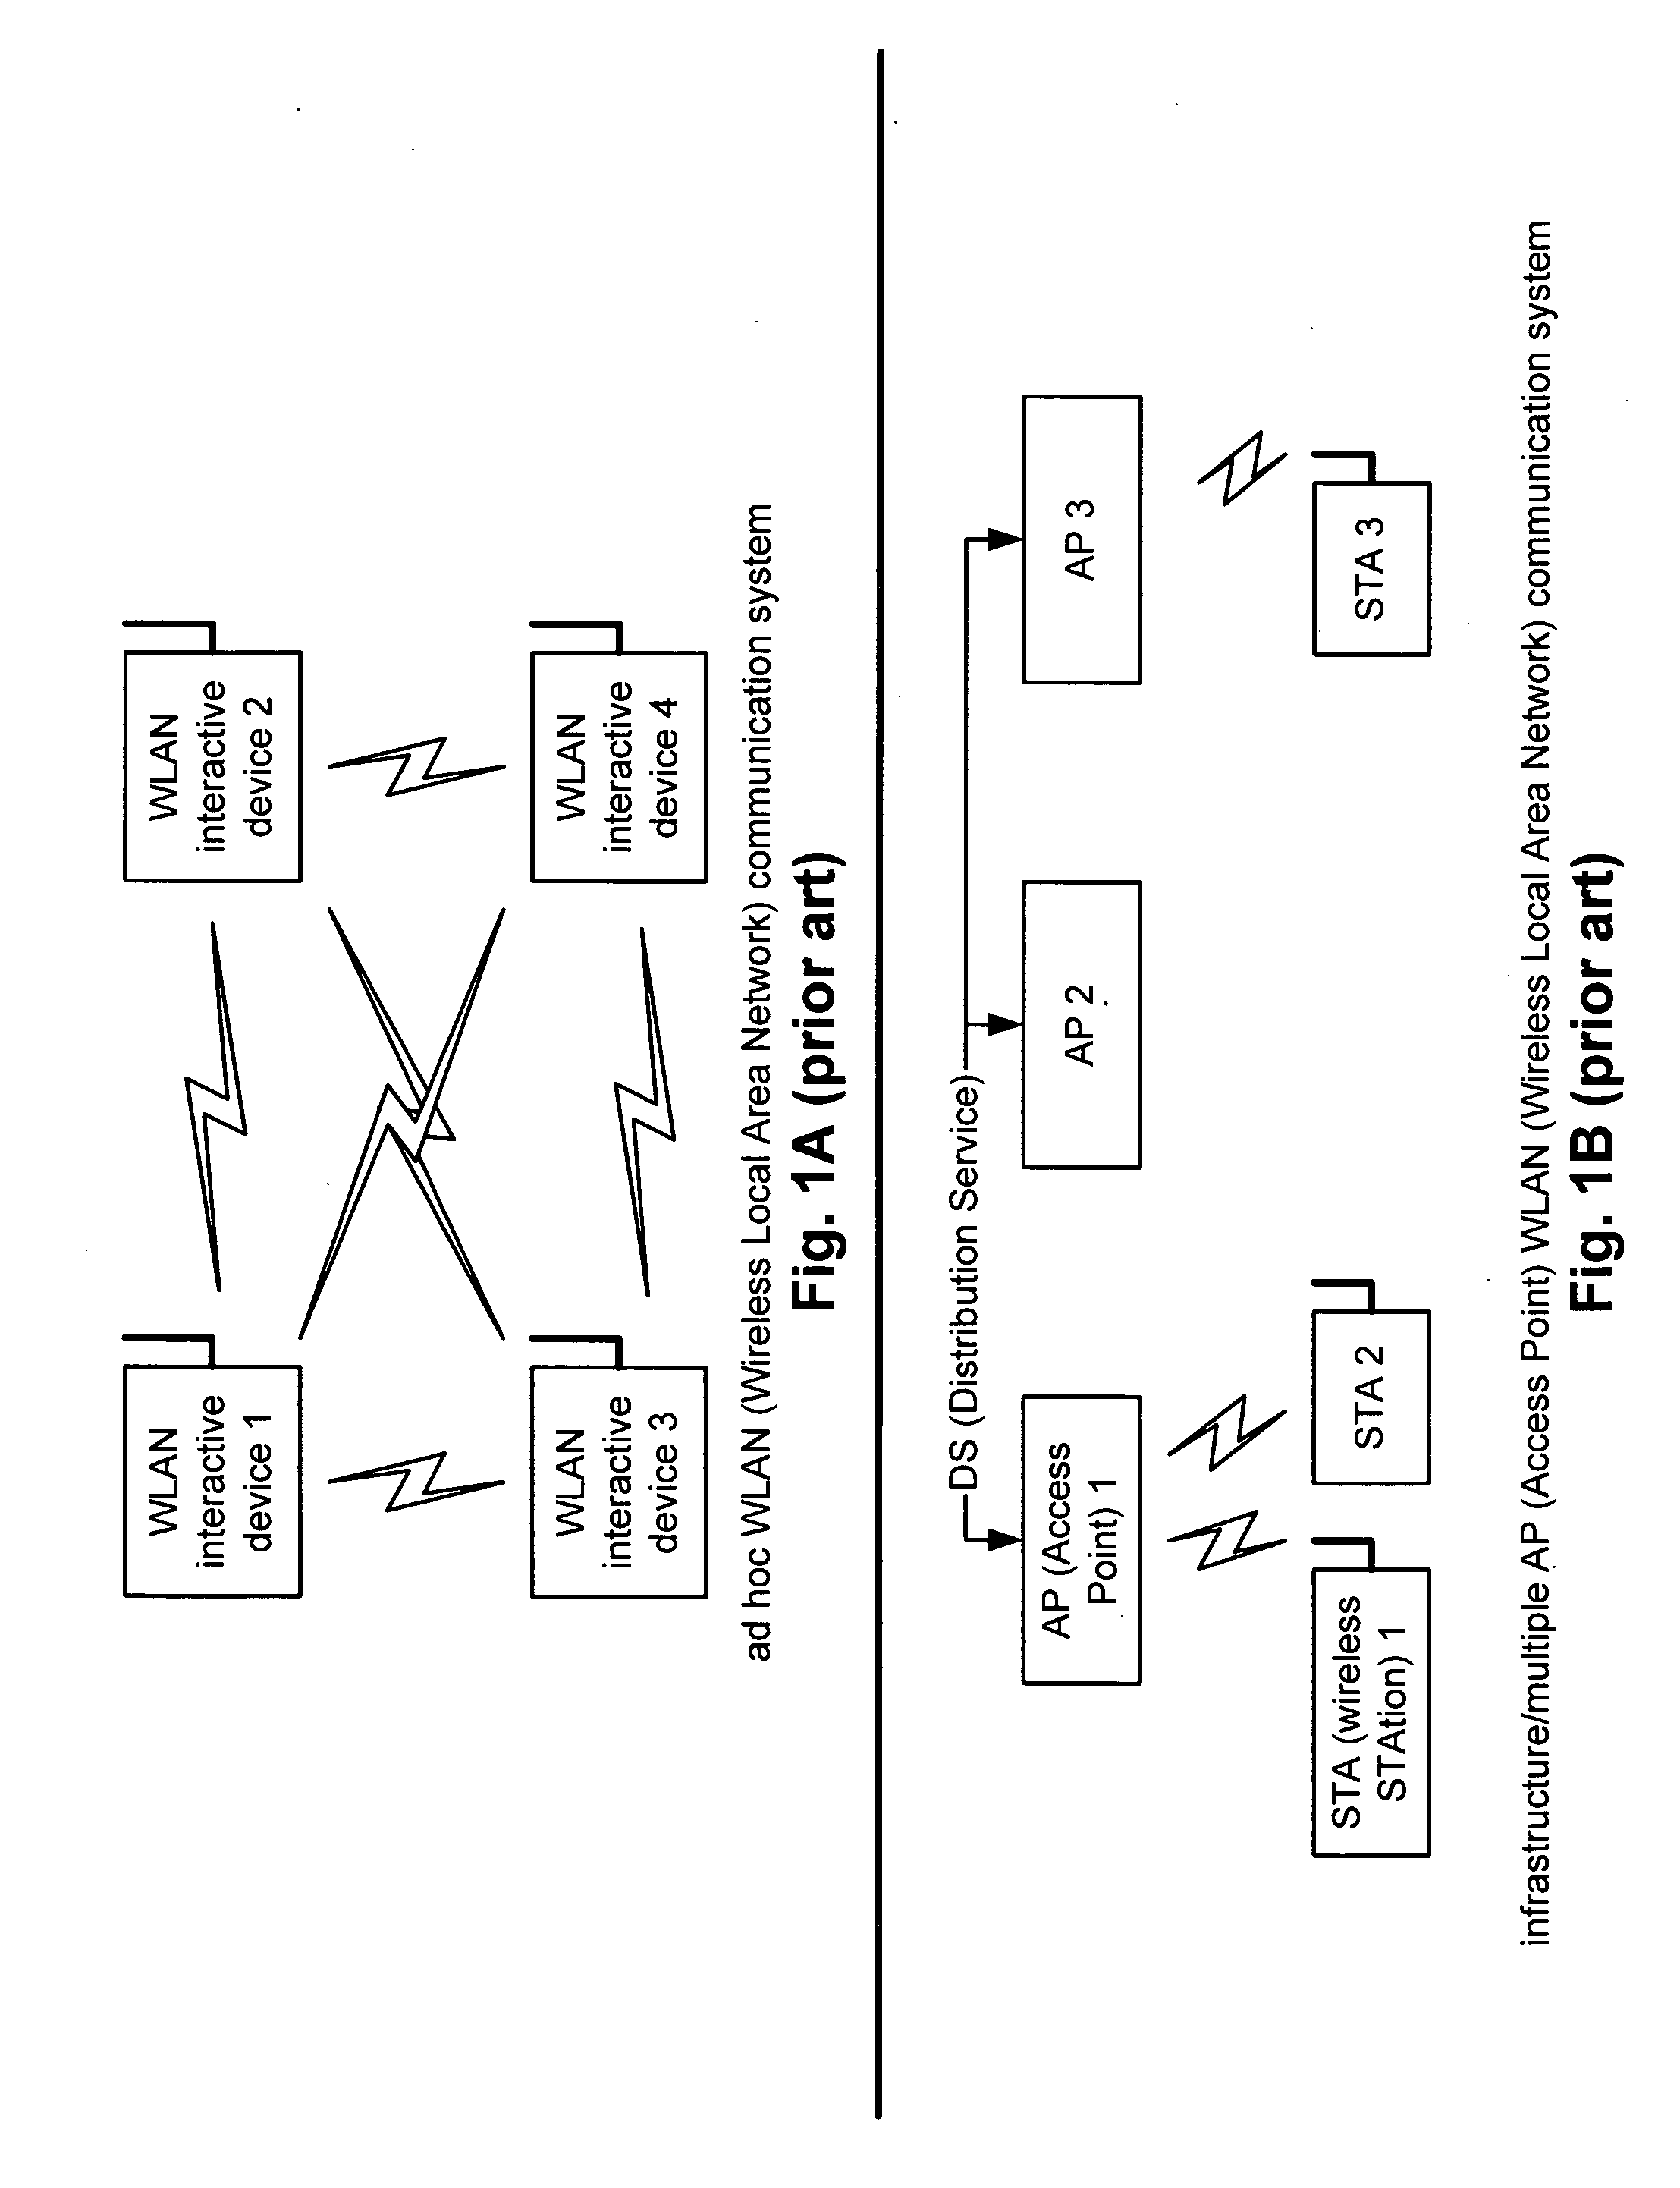 Multi-mode WLAN/PAN MAC